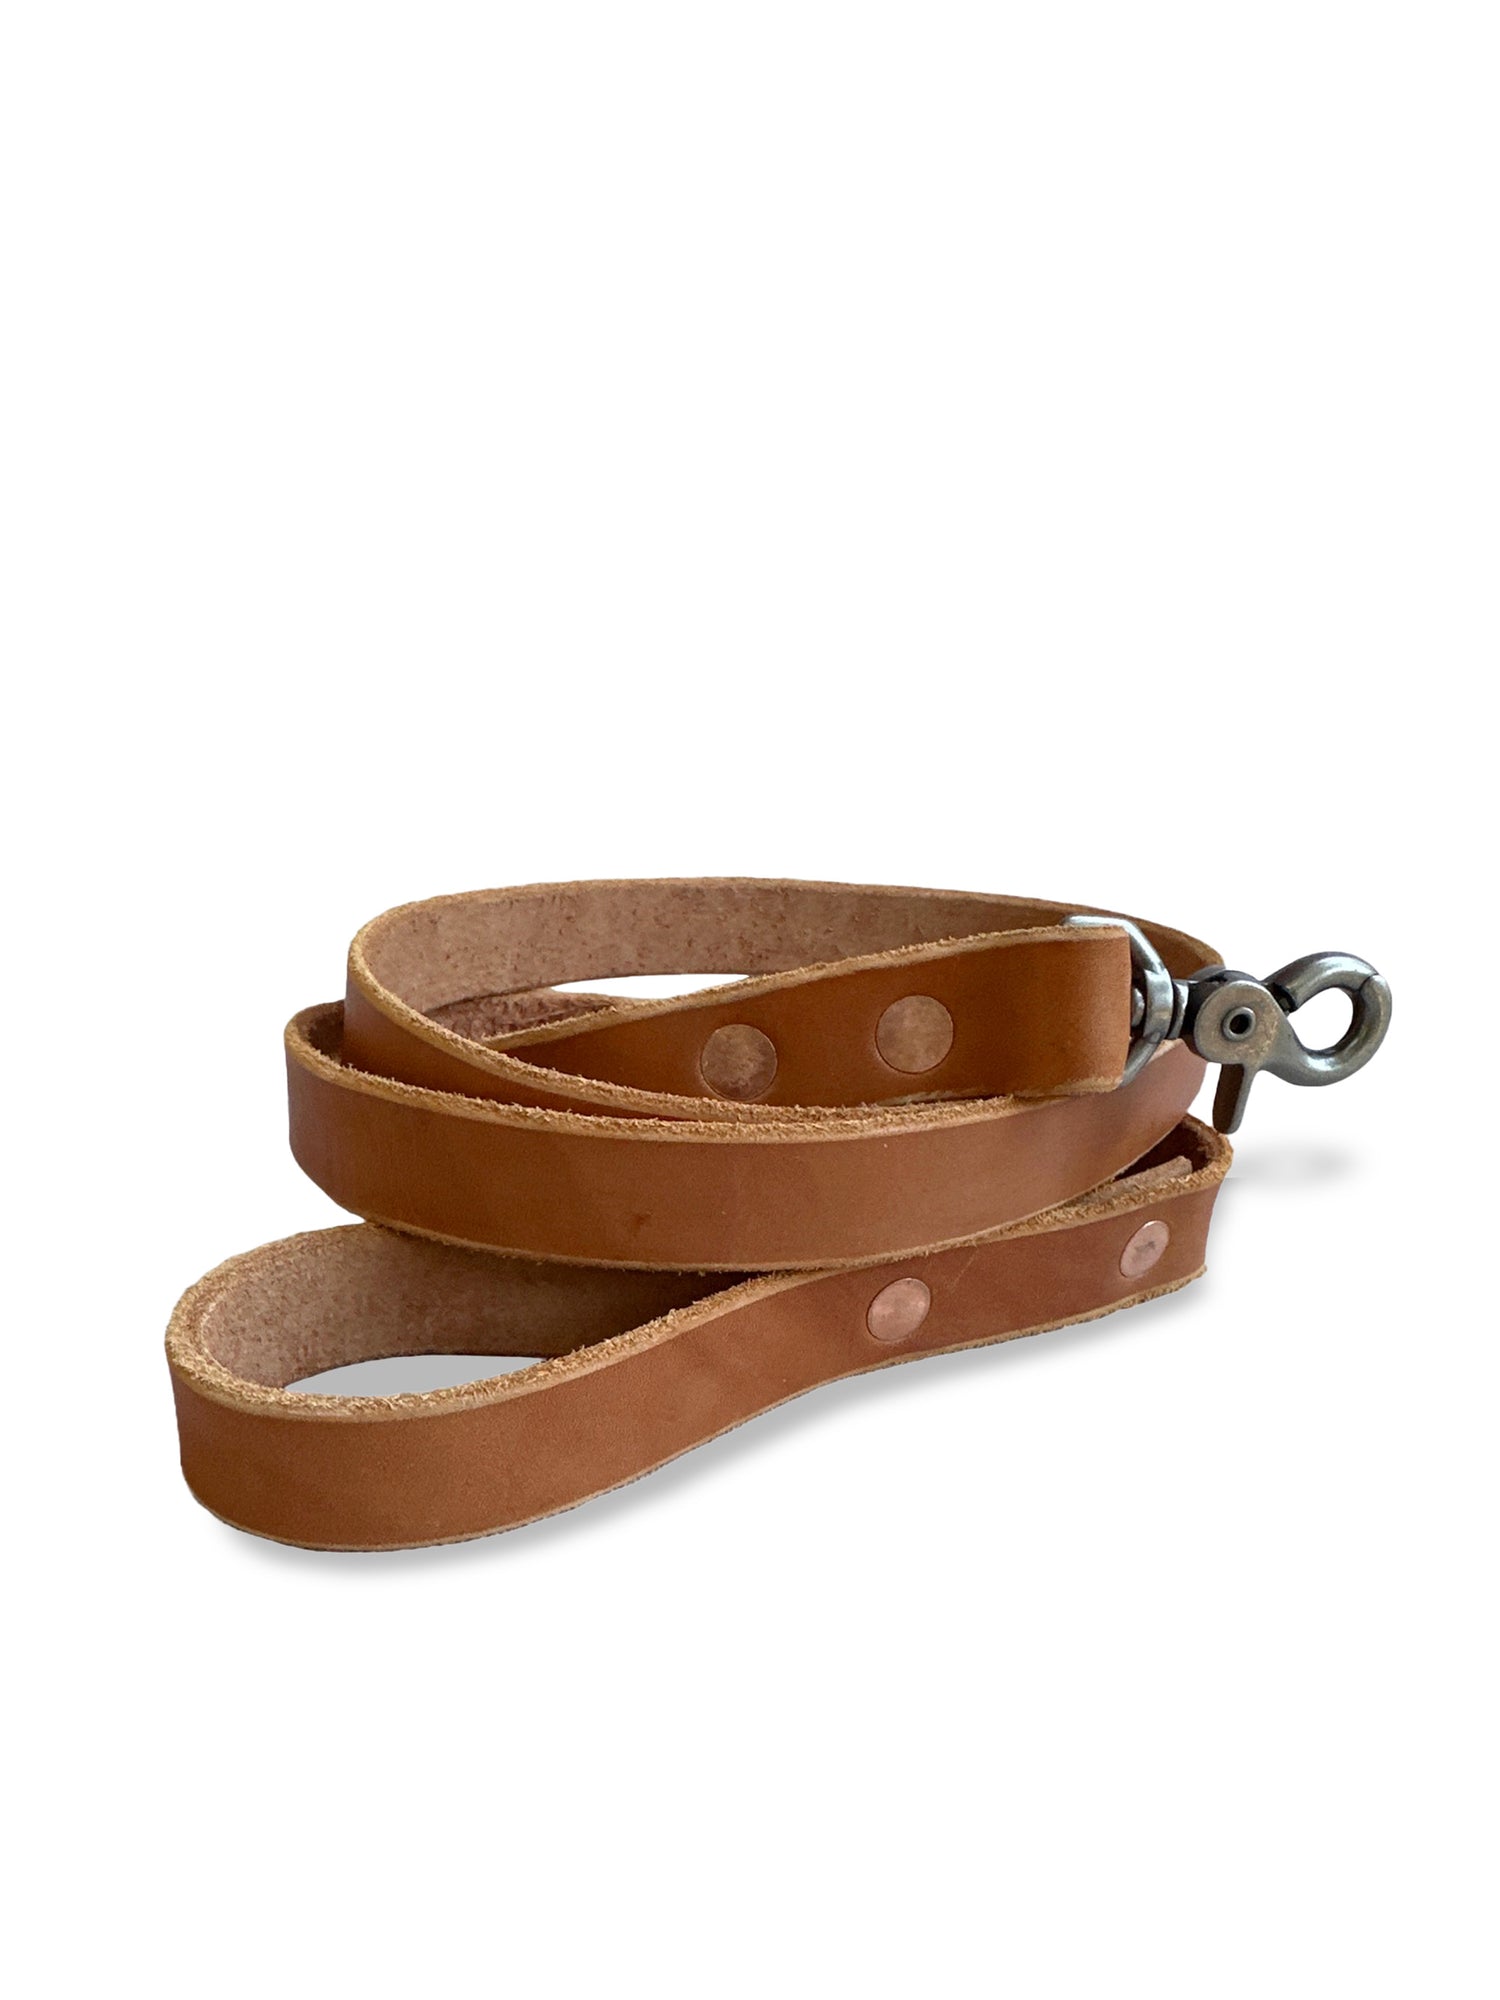 English Bridle Leather Dog Leash